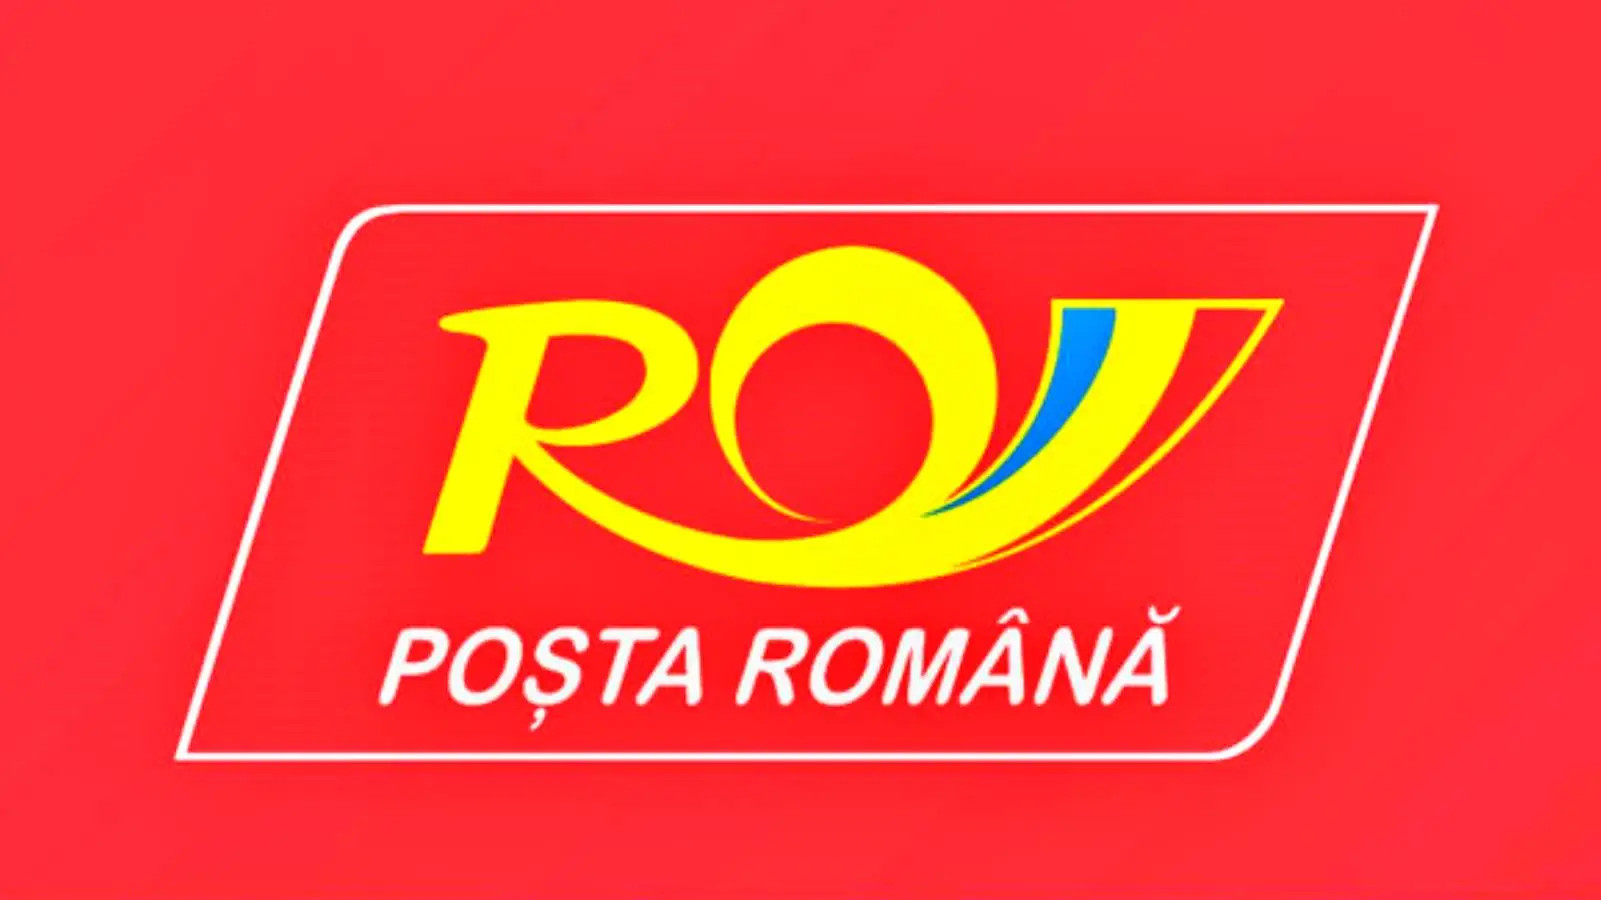 Decizia Luata Posta Romana Surprins Multi Romani